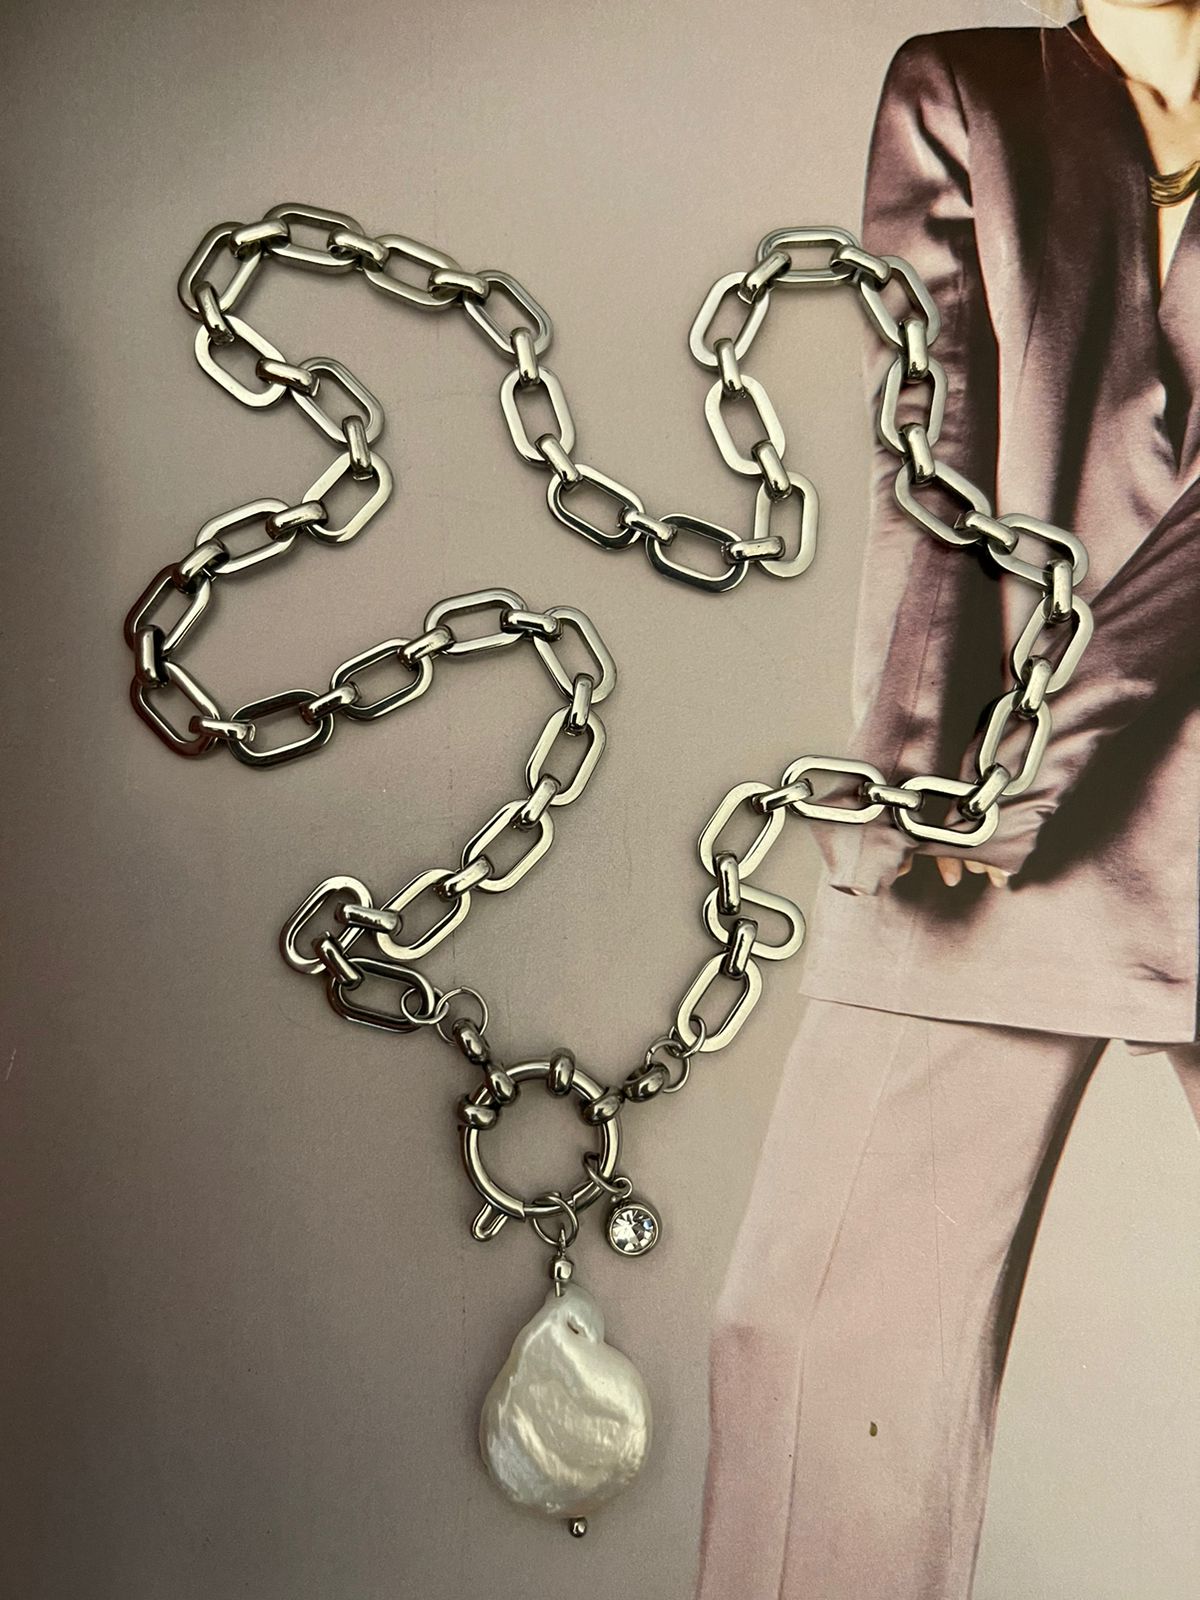 Collar Hippie Chic corto con cadena de acero inoxidable plateado, preciosa perla barroca natural blanca y punto de luz de cristal.